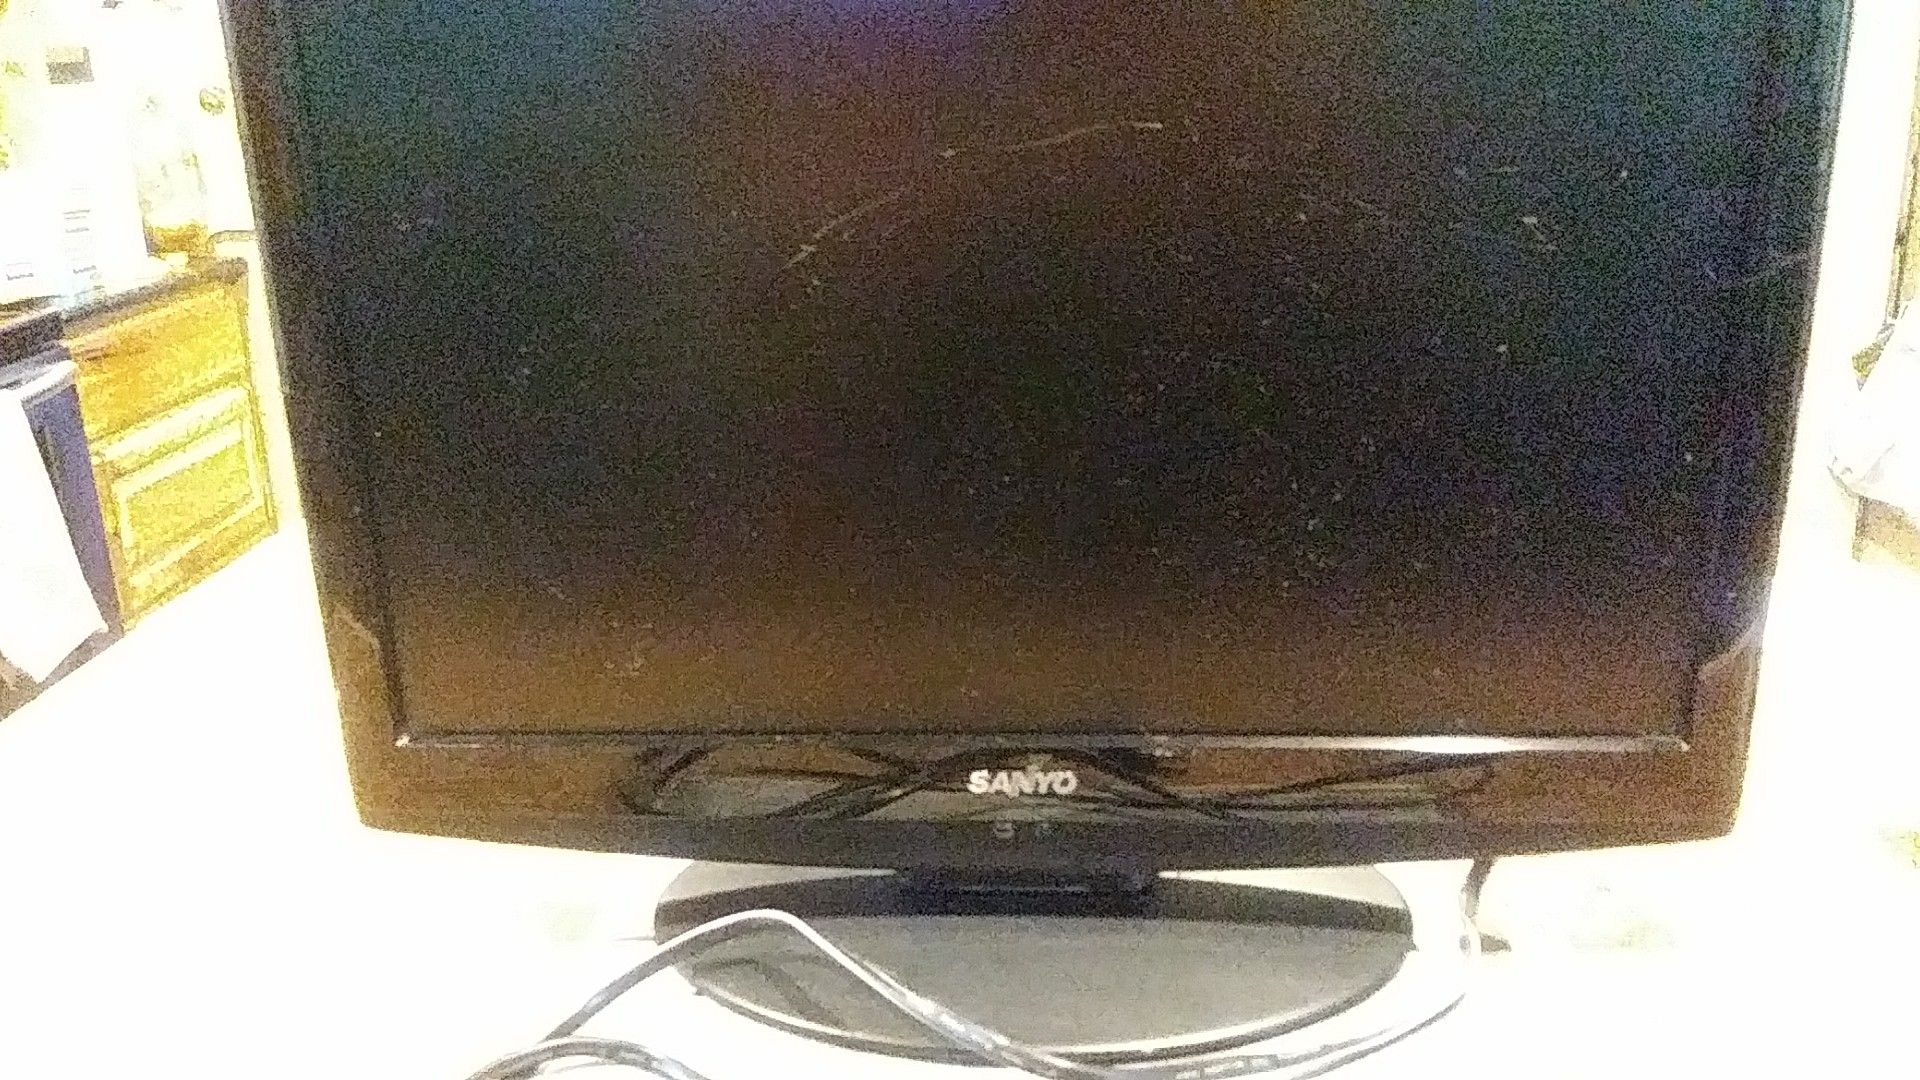 Sanyo LCD TV